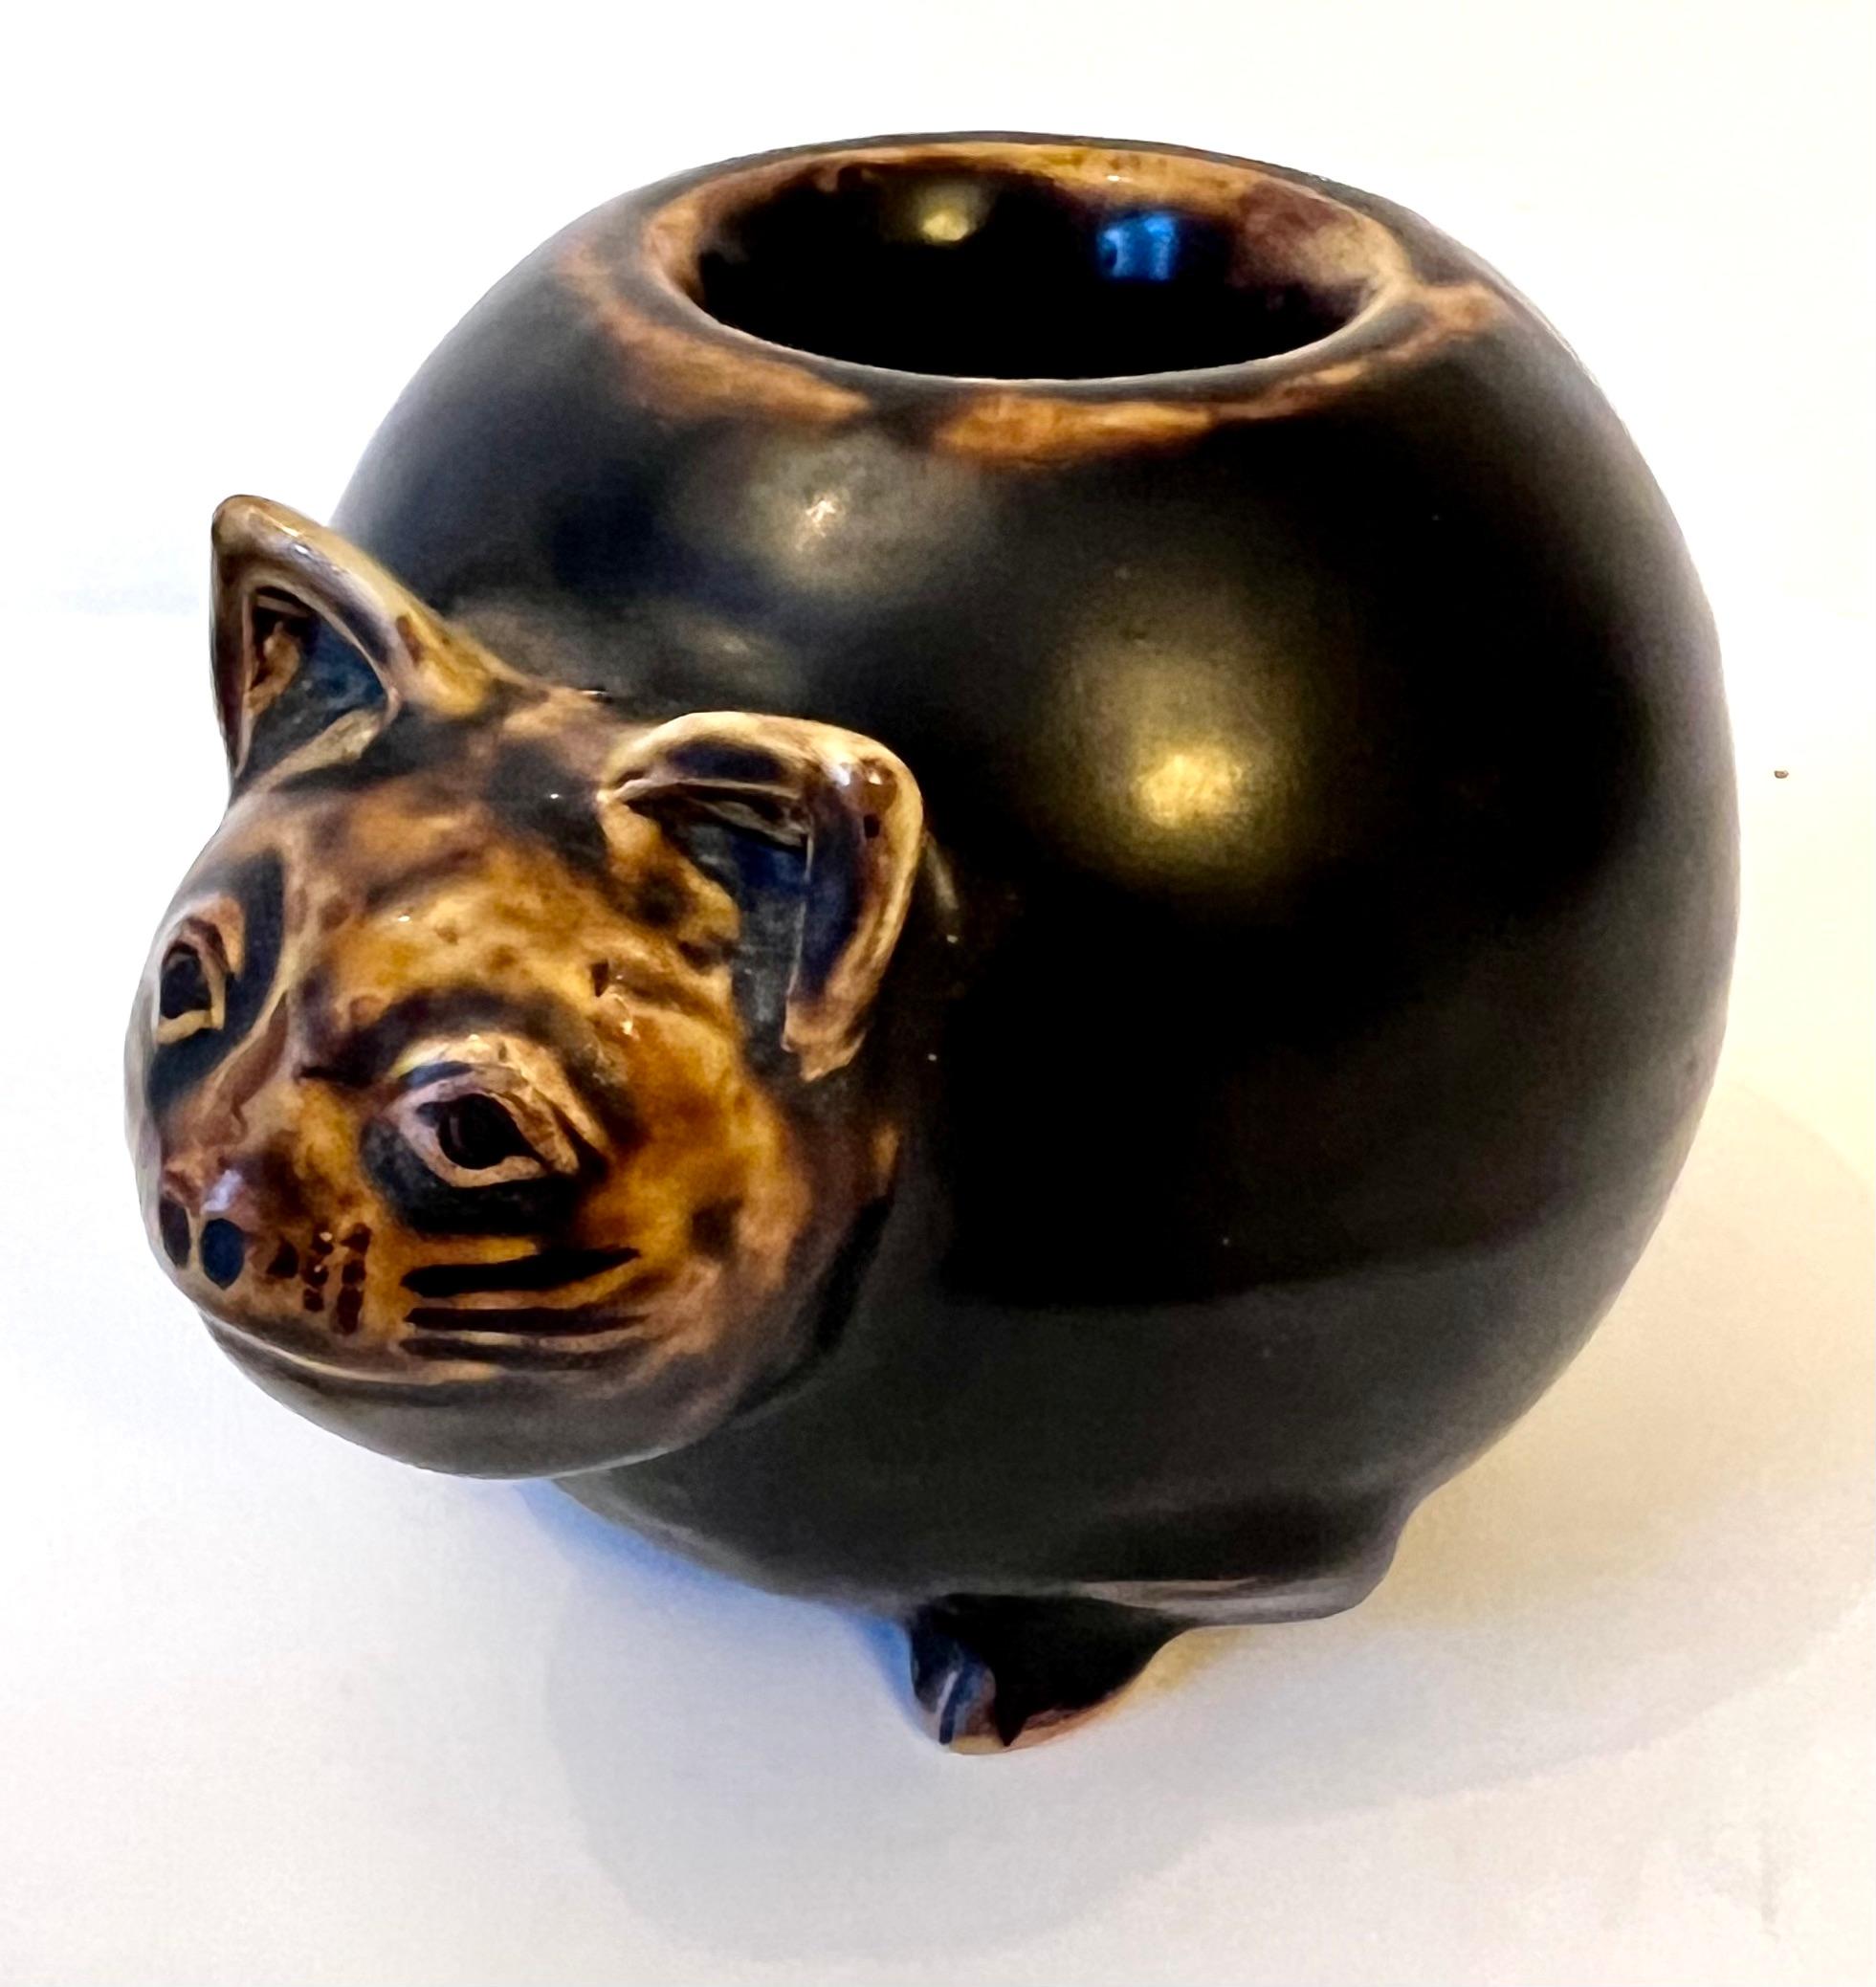 Einzigartig und zart - eine Katze aus Terrakotta-Keramik, erworben in Paris, Frankreich.  
Das Stück passt zu vielen Umgebungen und würde sich gut in einem Kinderzimmer oder bei jemandem, der Katzen sehr mag, machen. 

Der Körper hat eine Glocke im